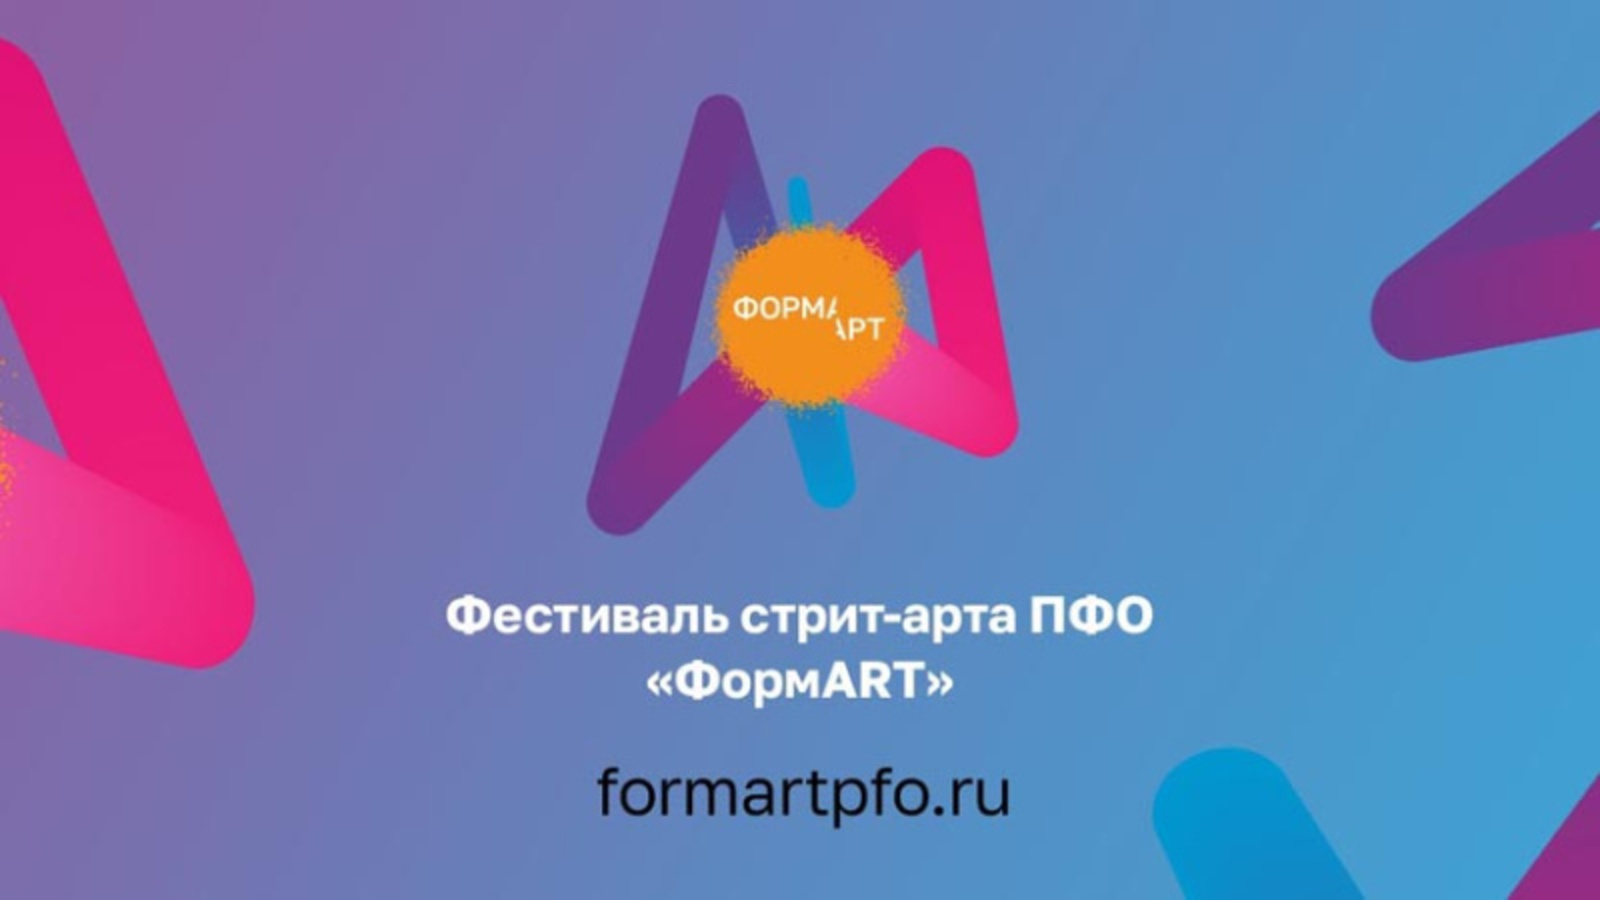 Уфимский дизайнер стал финалистом фестиваля стрит-арта ПФО «ФормART»